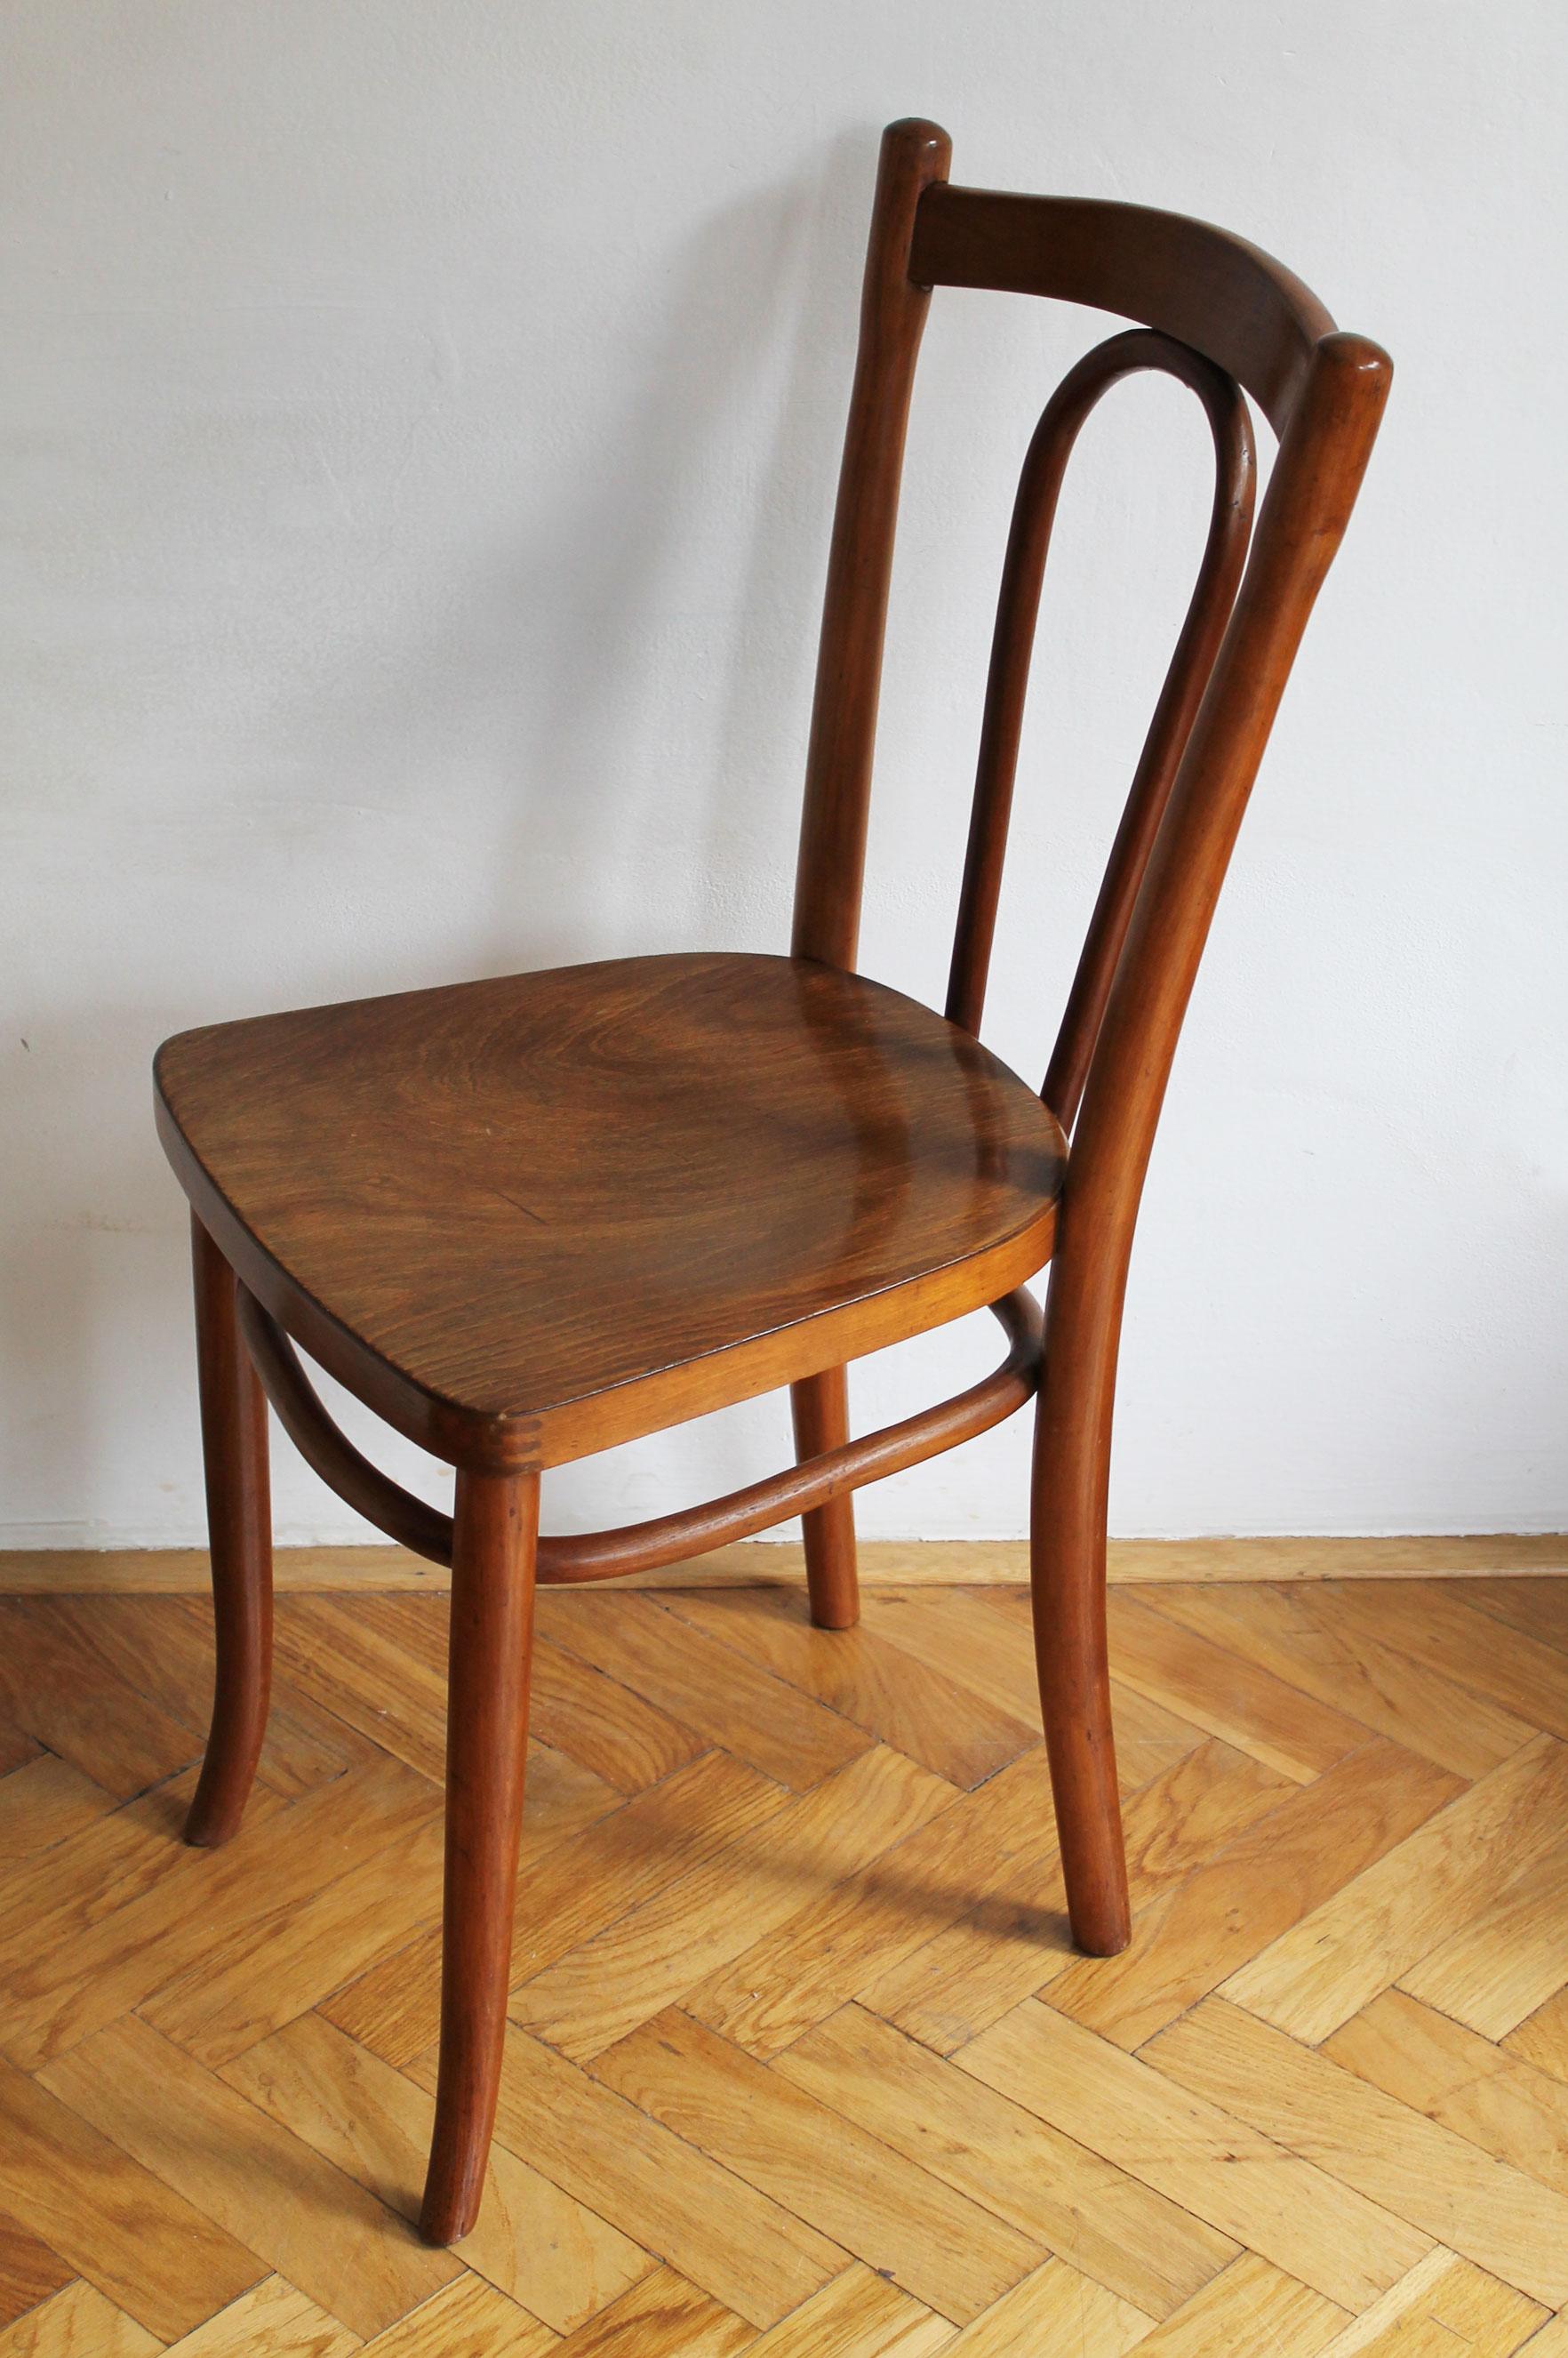 Dies ist einer der kommerziell erfolgreichsten Stühle, die von der berühmten Firma Gebrüder Thonet entworfen und produziert wurden. Sie wurde erstmals 1885 (wahrscheinlich von August Thonet) entworfen und ist in den Thonet Katalogen in leicht